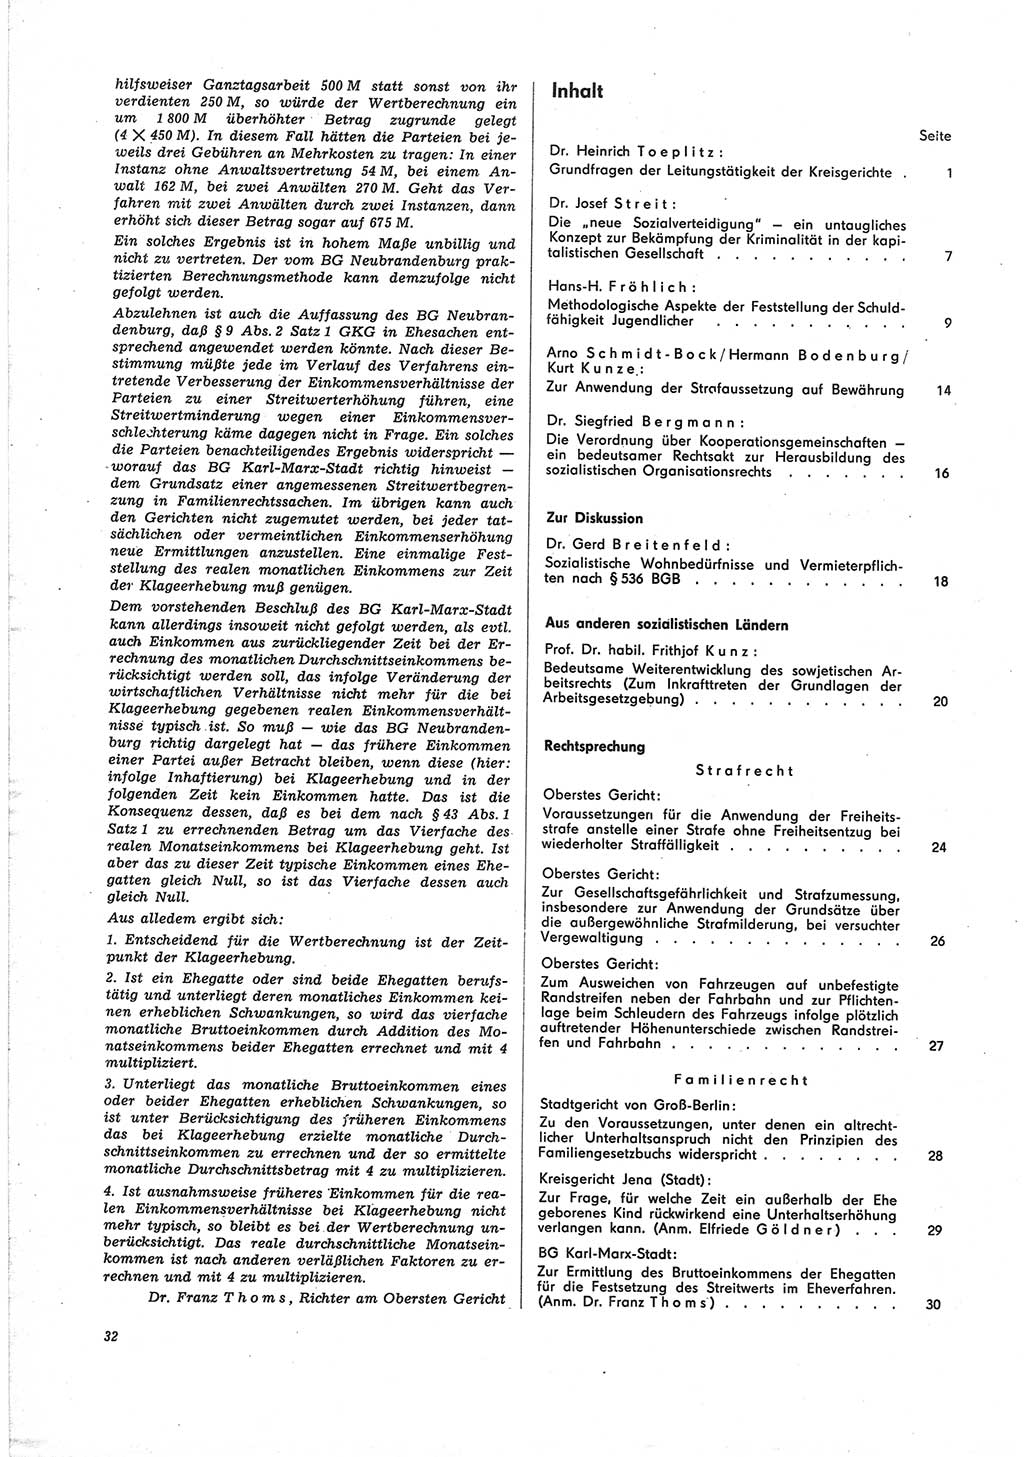 Neue Justiz (NJ), Zeitschrift für Recht und Rechtswissenschaft [Deutsche Demokratische Republik (DDR)], 25. Jahrgang 1971, Seite 32 (NJ DDR 1971, S. 32)